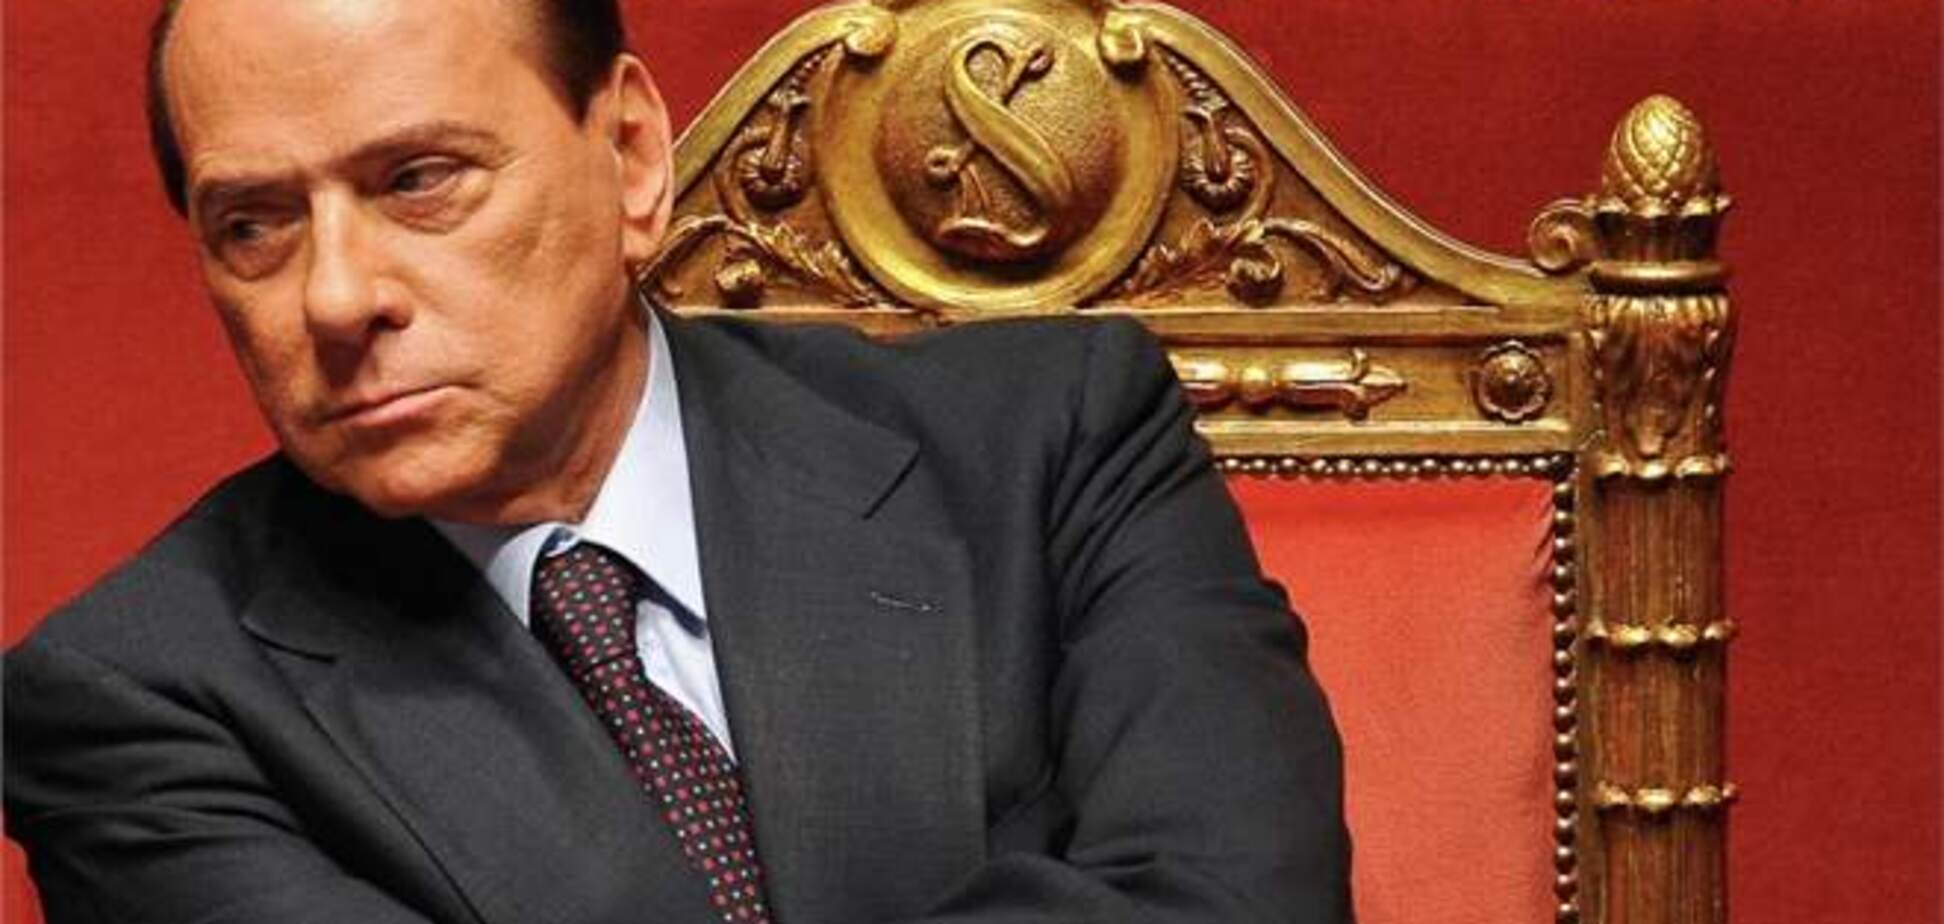 Суд в Италии, как ожидается, в среду примет решение по делу Берлускони